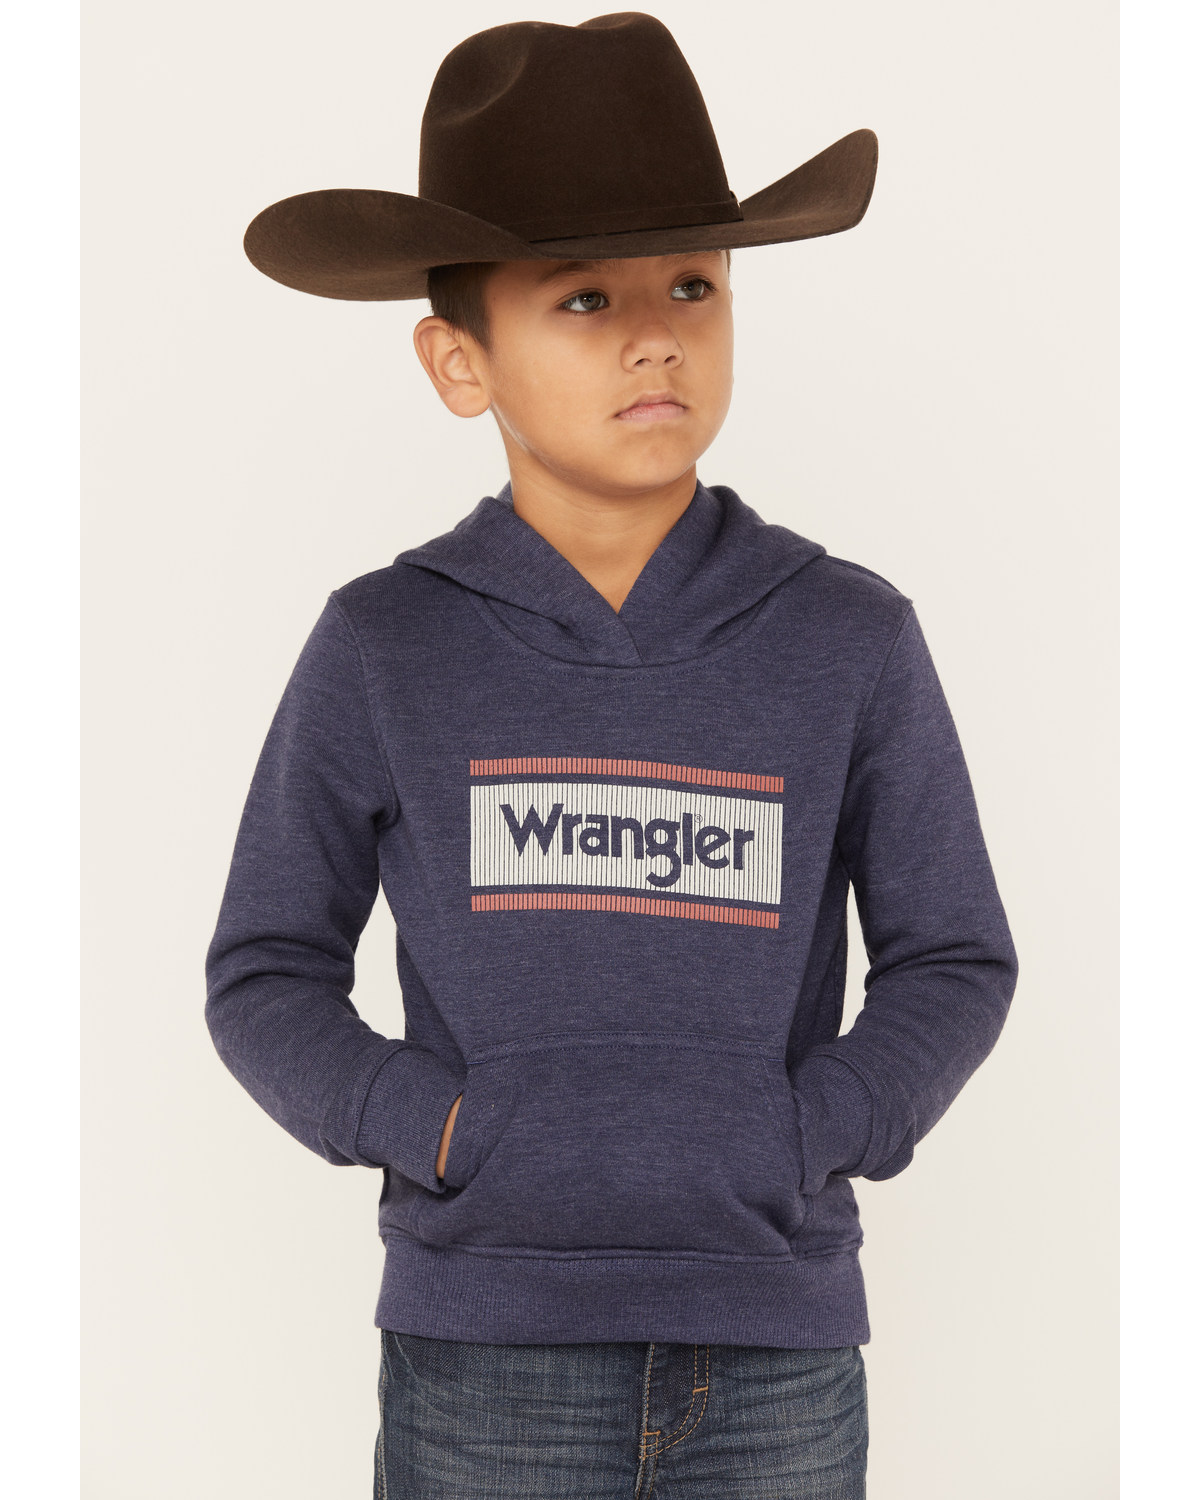 Wrangler Boys' Graphic Hooded Sweatshirt